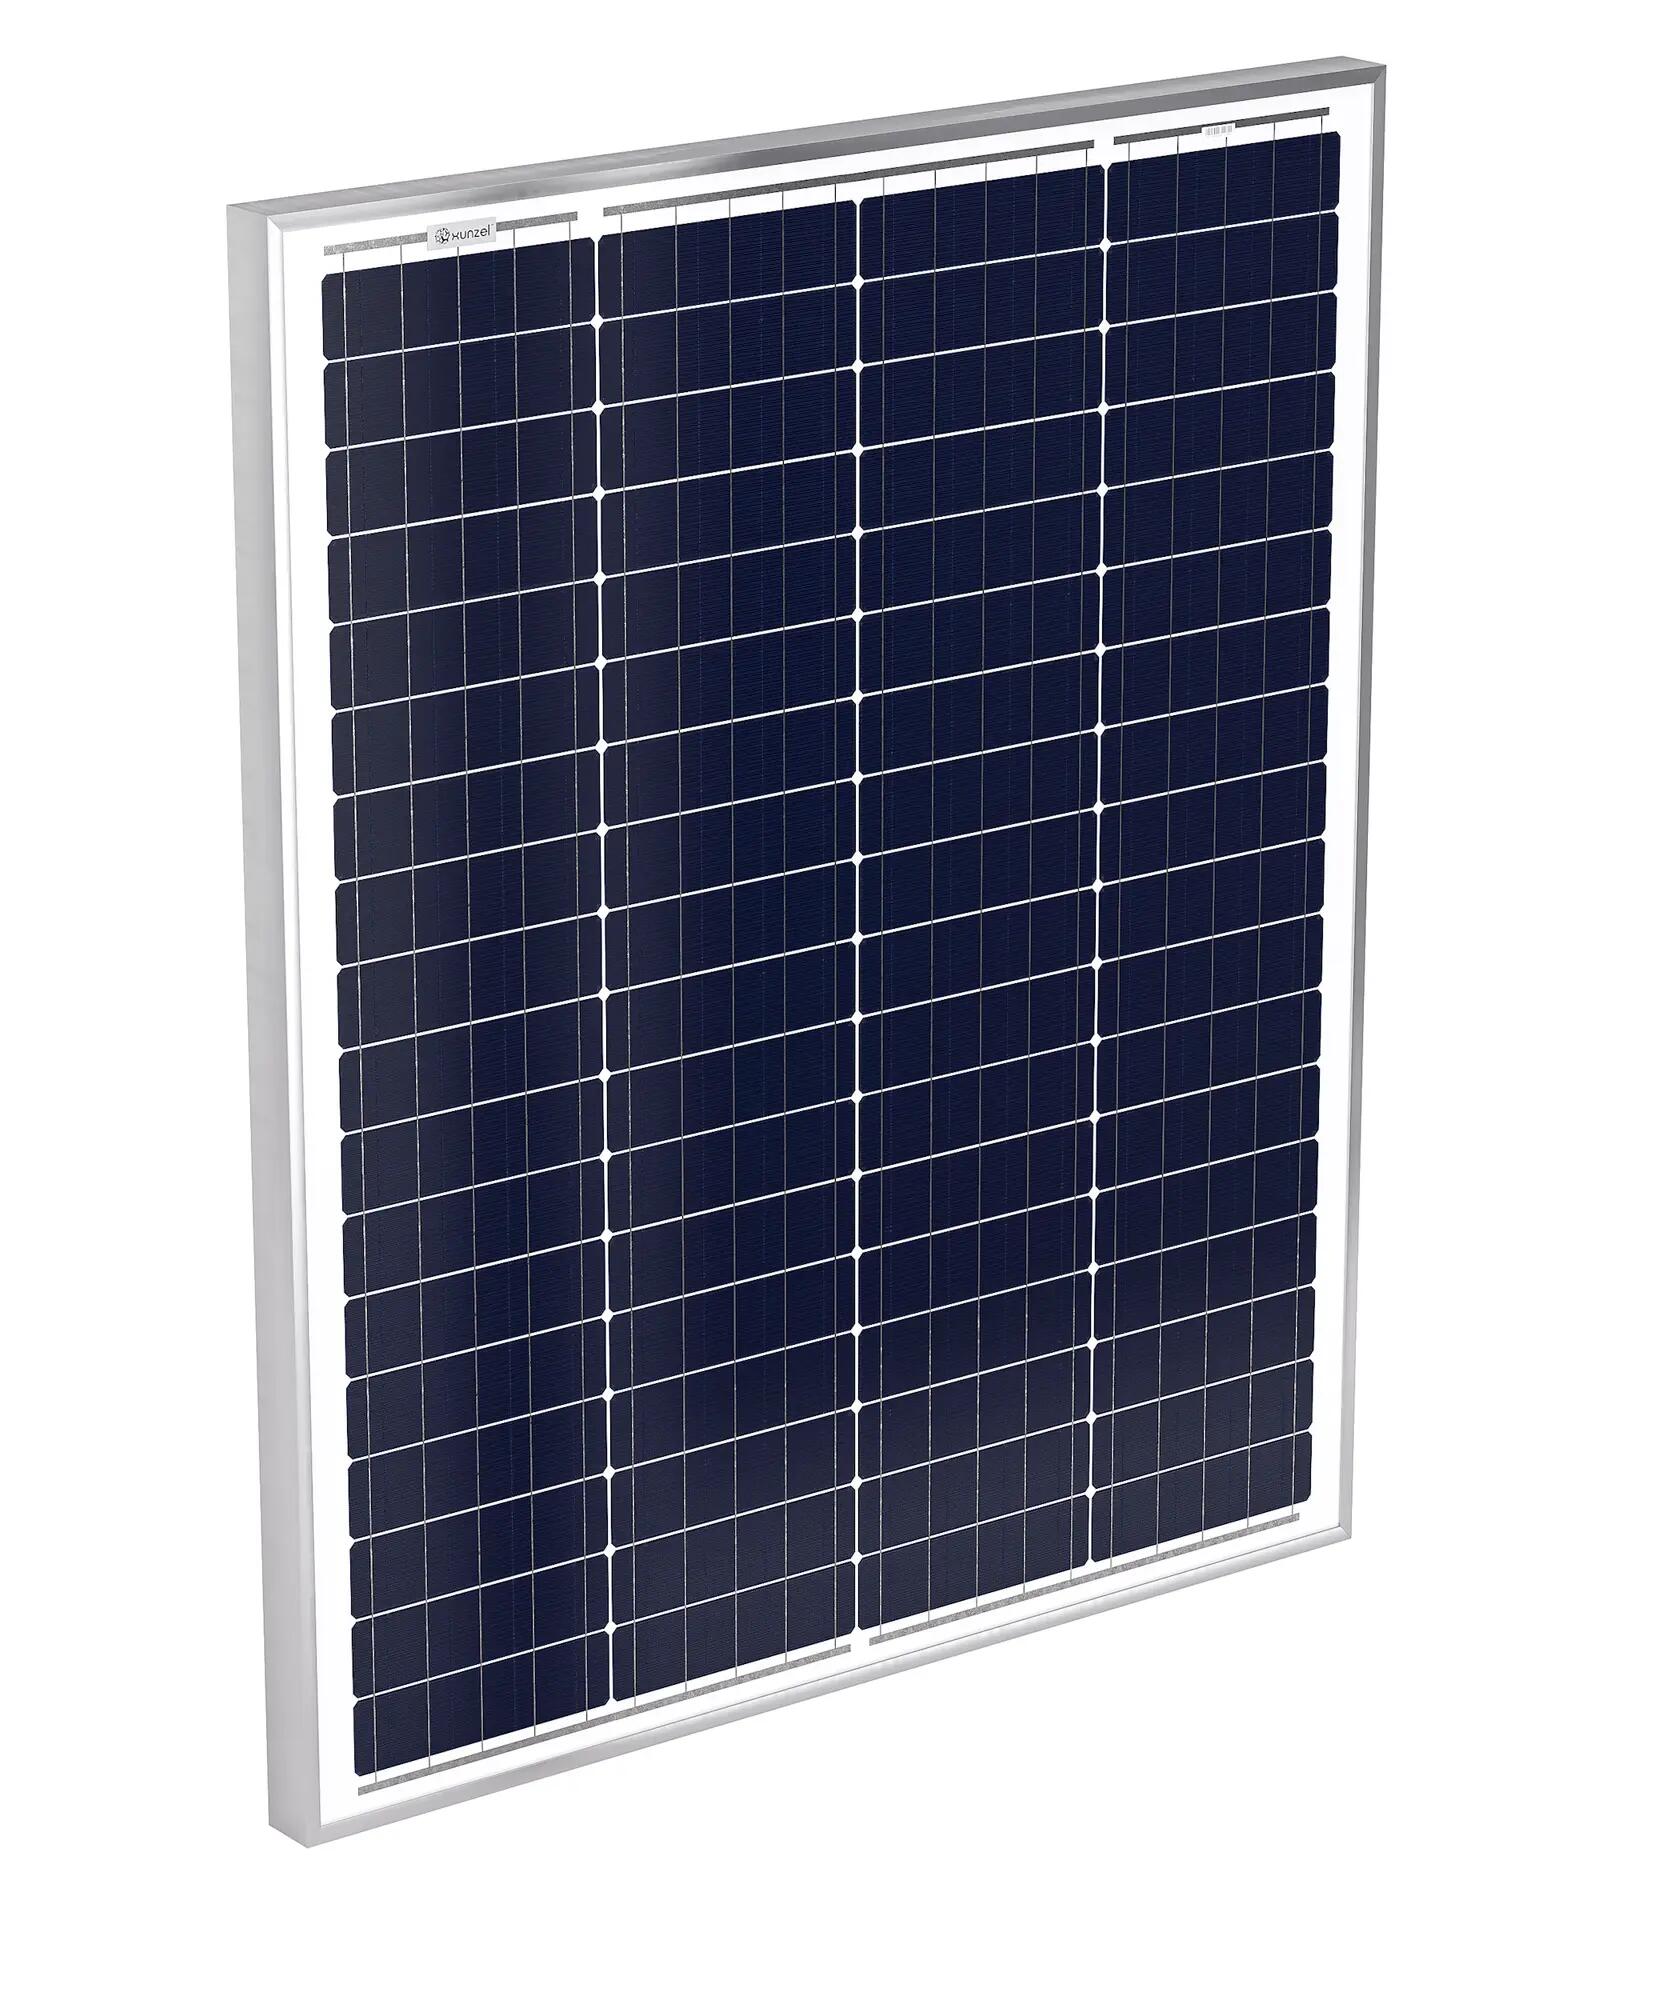 Panel solar fotovoltaico solarpower-xunzel-100w-24v de alta eficiencia 4m cable